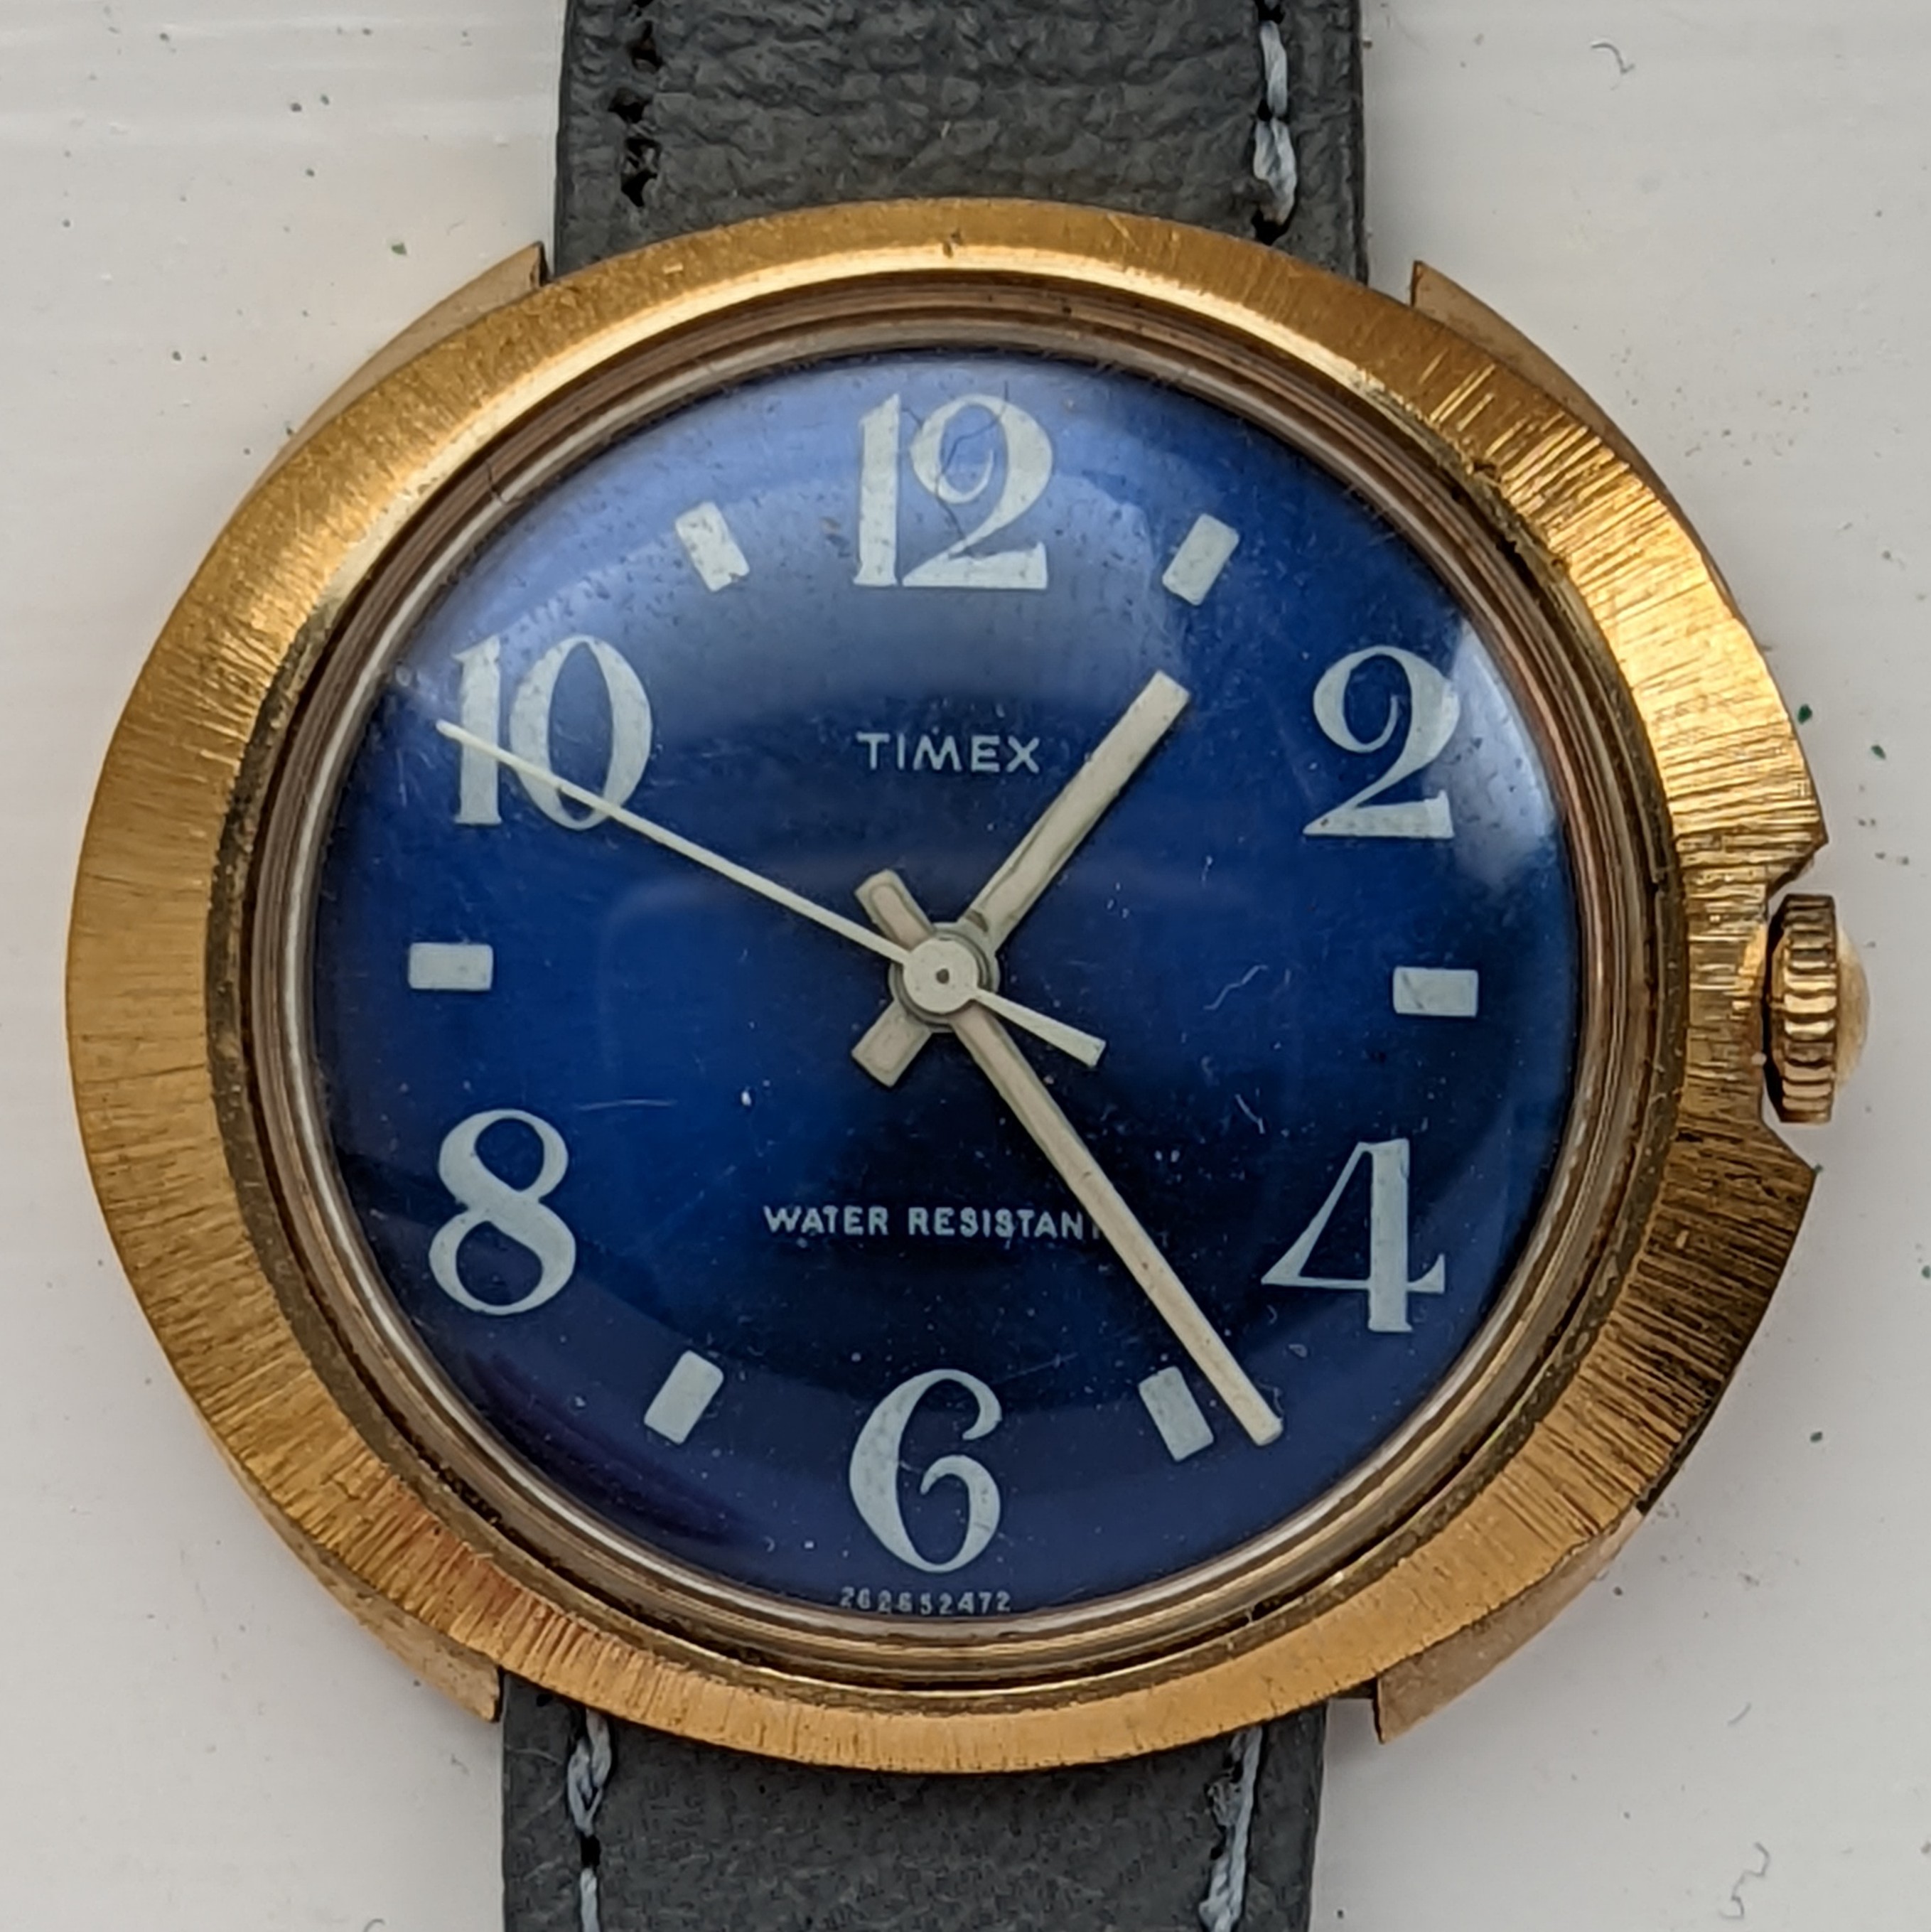 Timex Marlin 26265 2472 [1972]